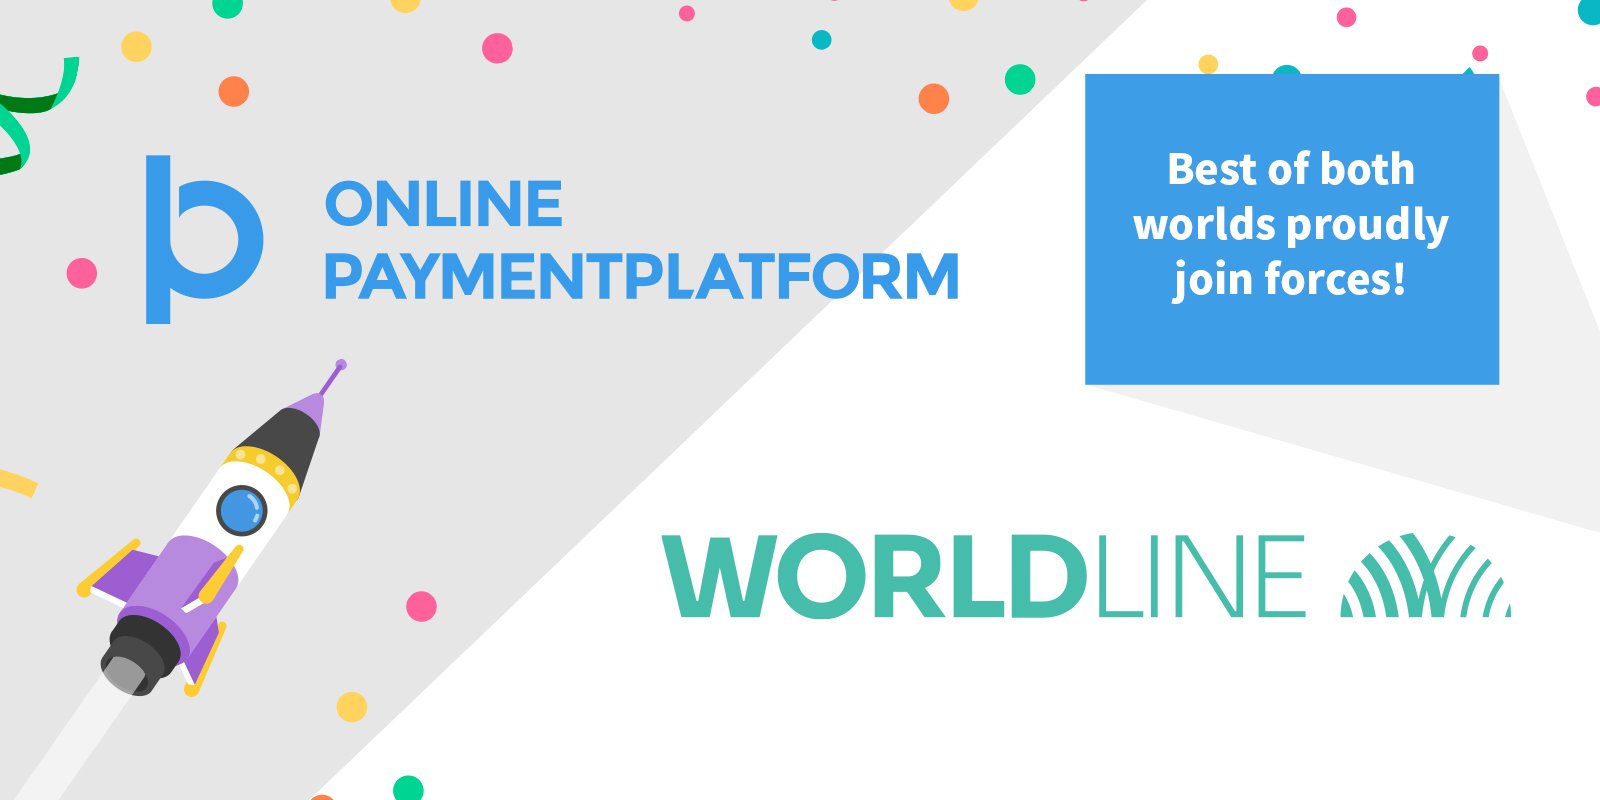 Online Game Platform Voidu Taps Worldline to Provide Payment Services 